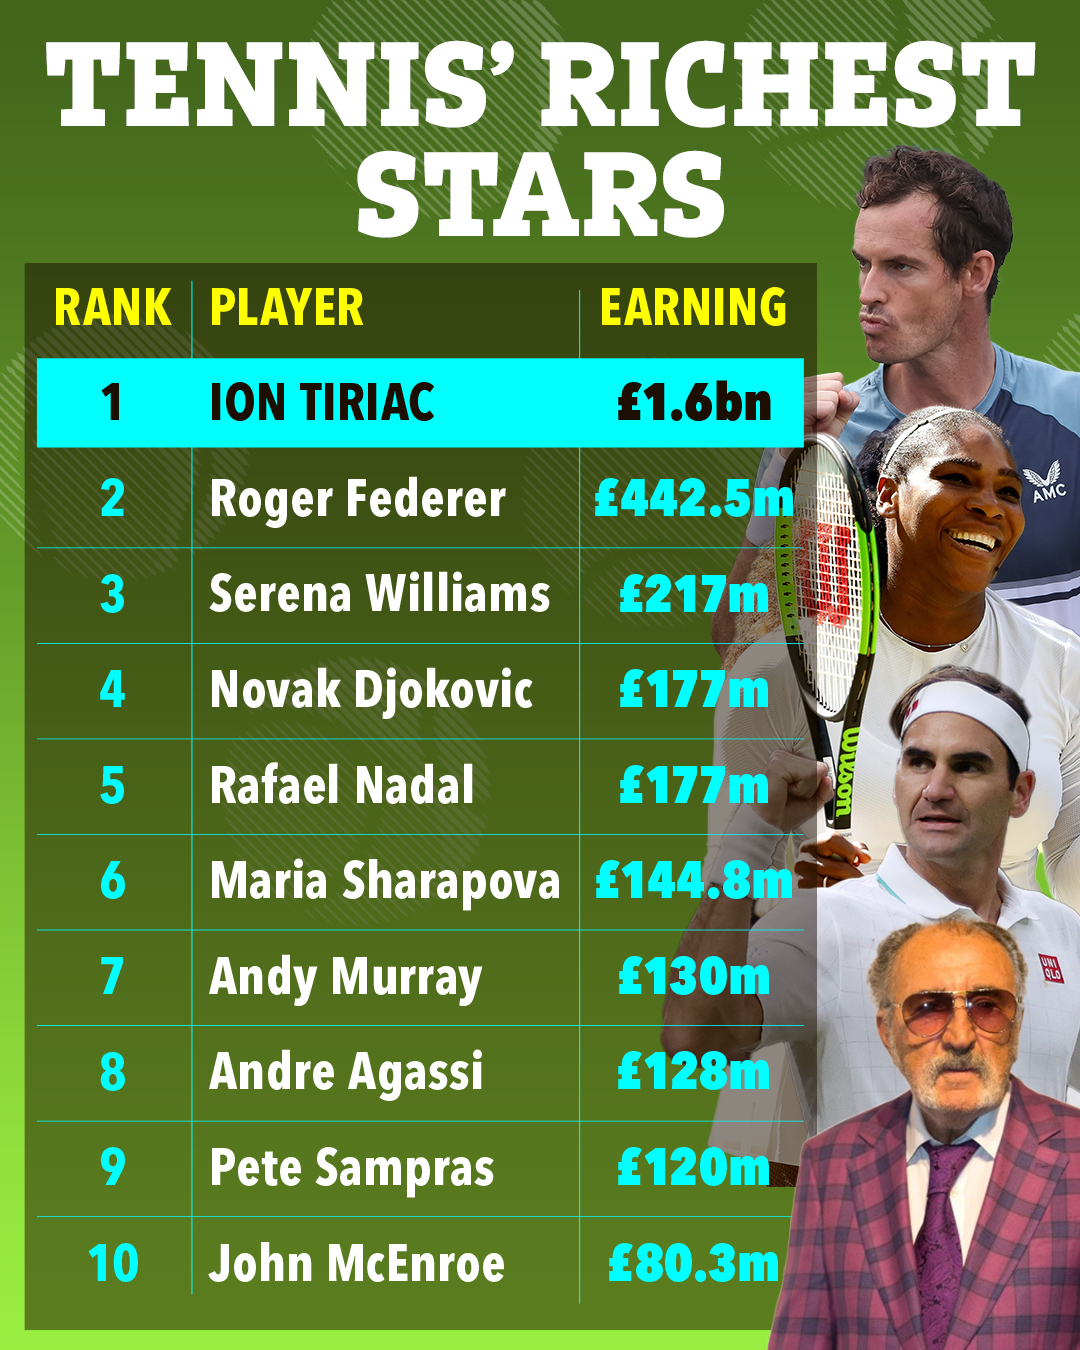 Die 10 reichsten Stars im Tennis